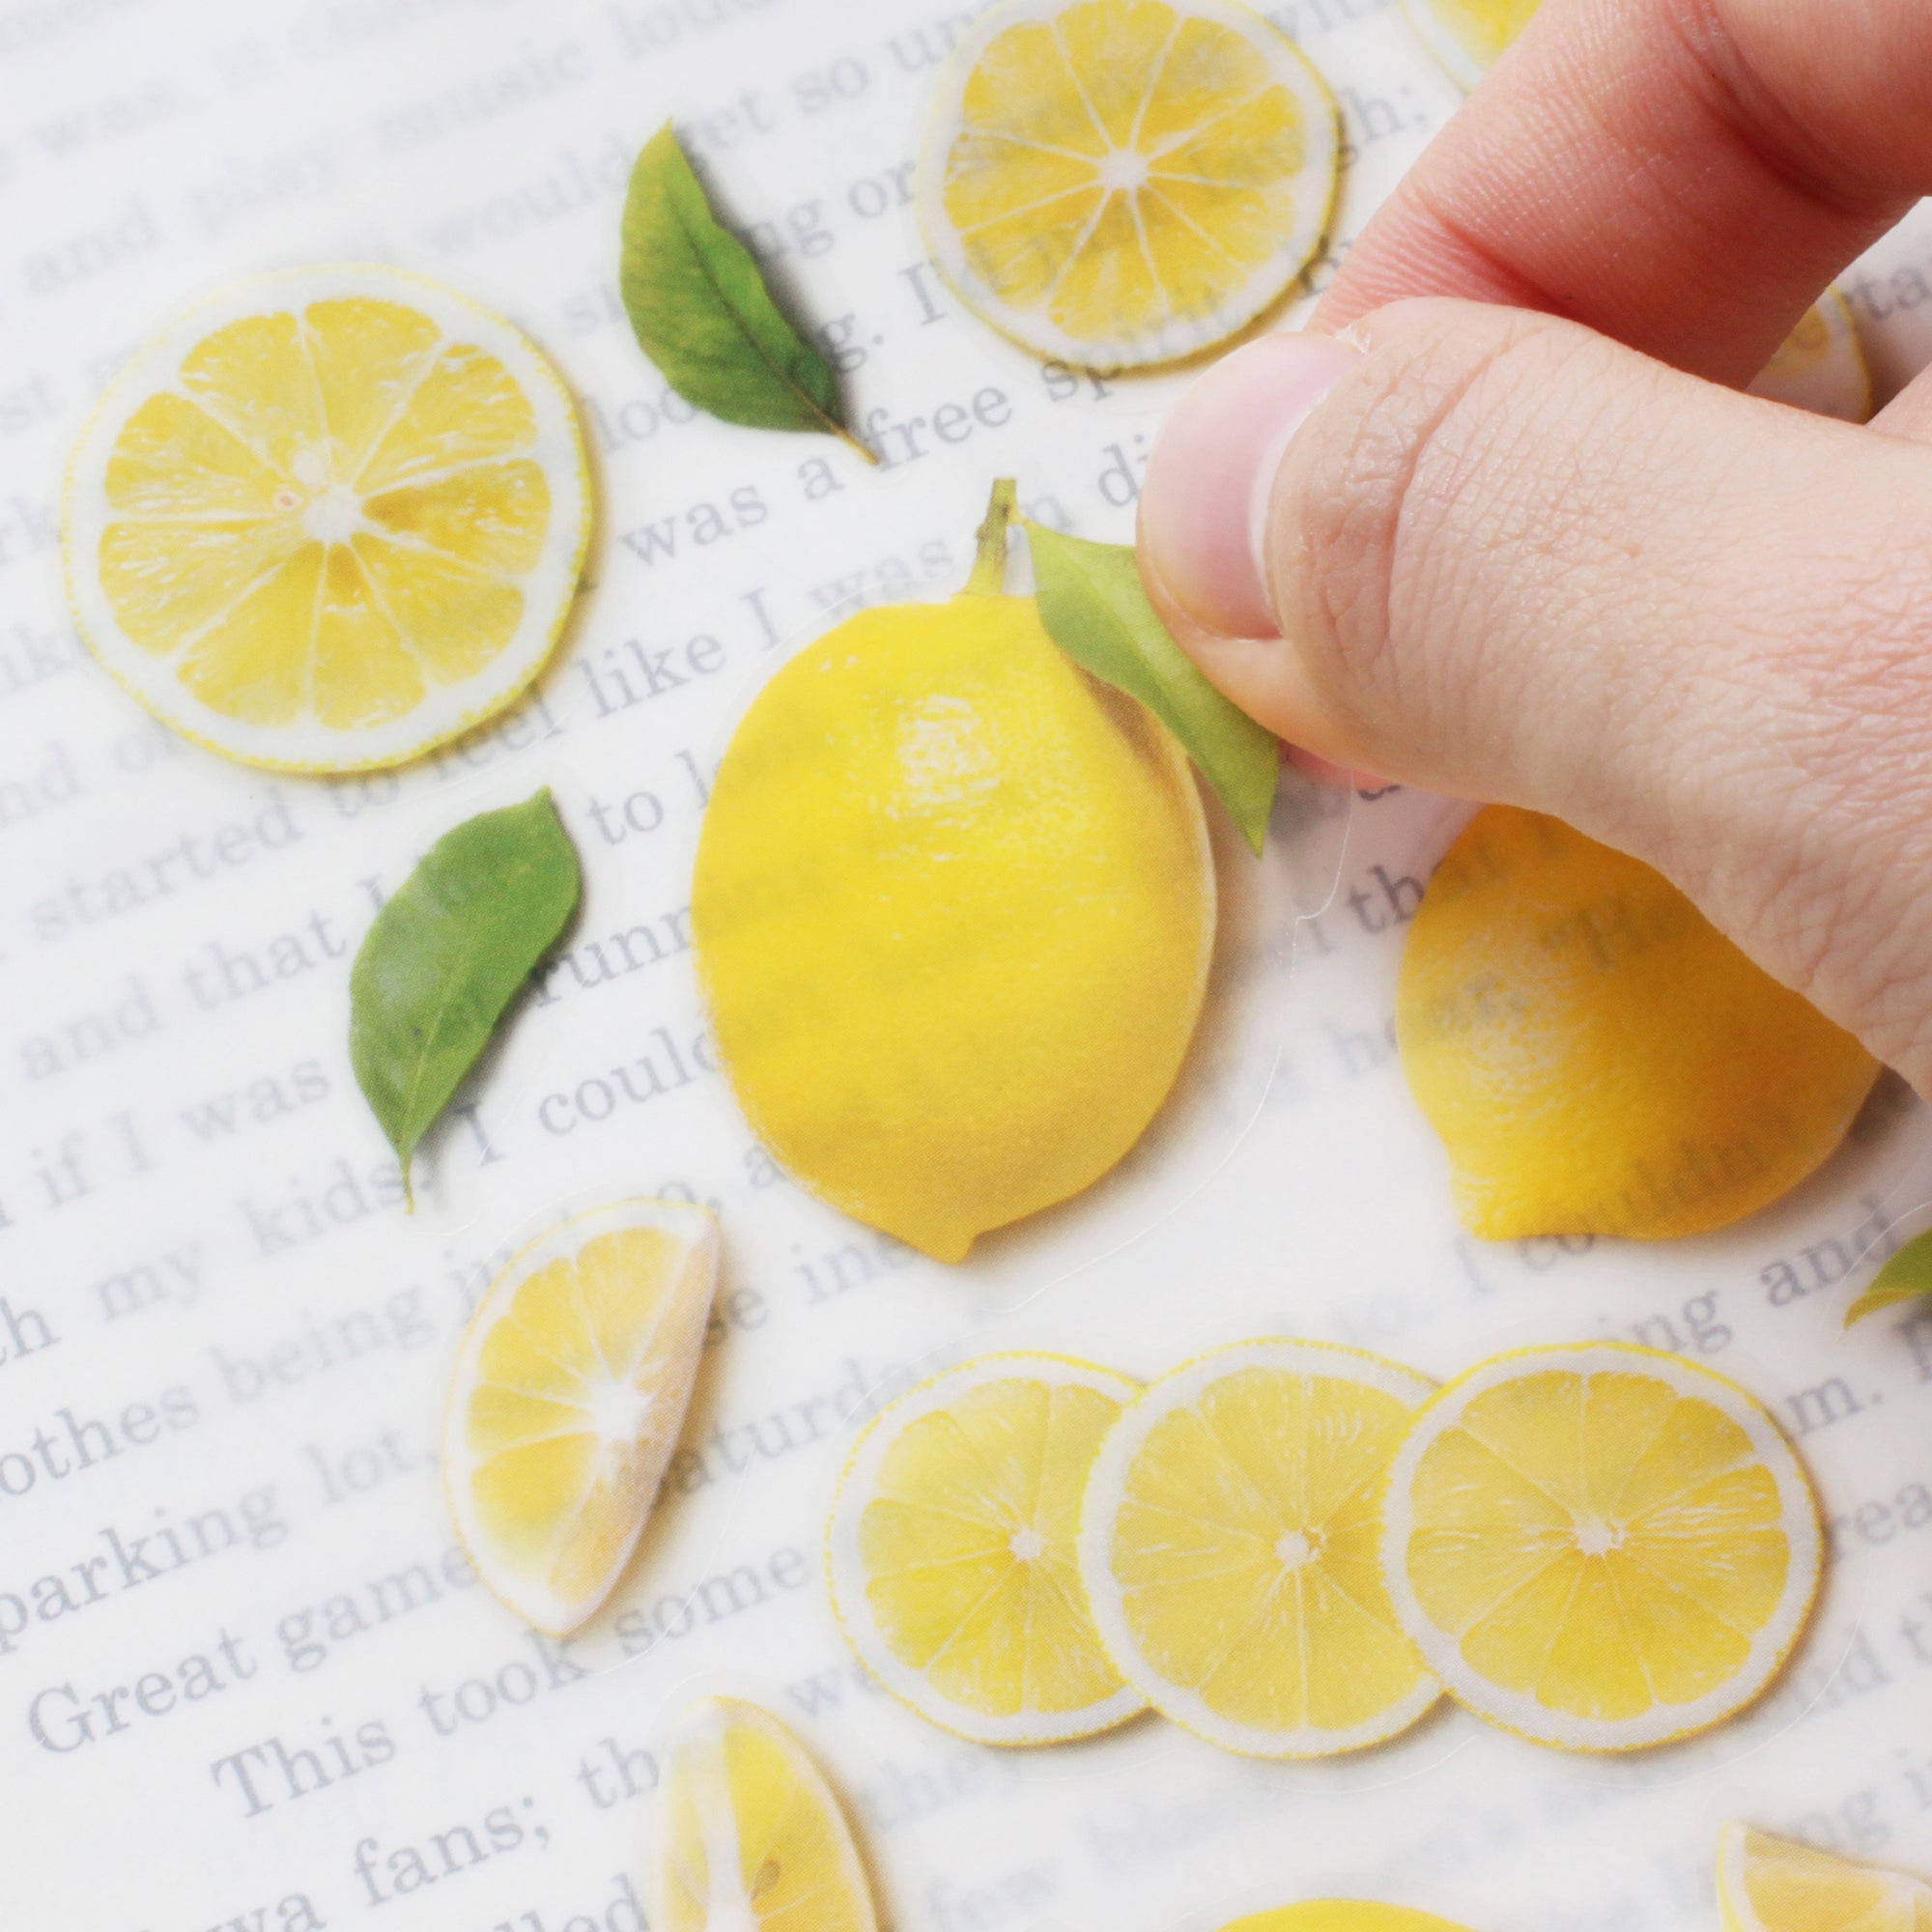 Appree - Fruit Sticker - Lemon-Sticker-DutchMills